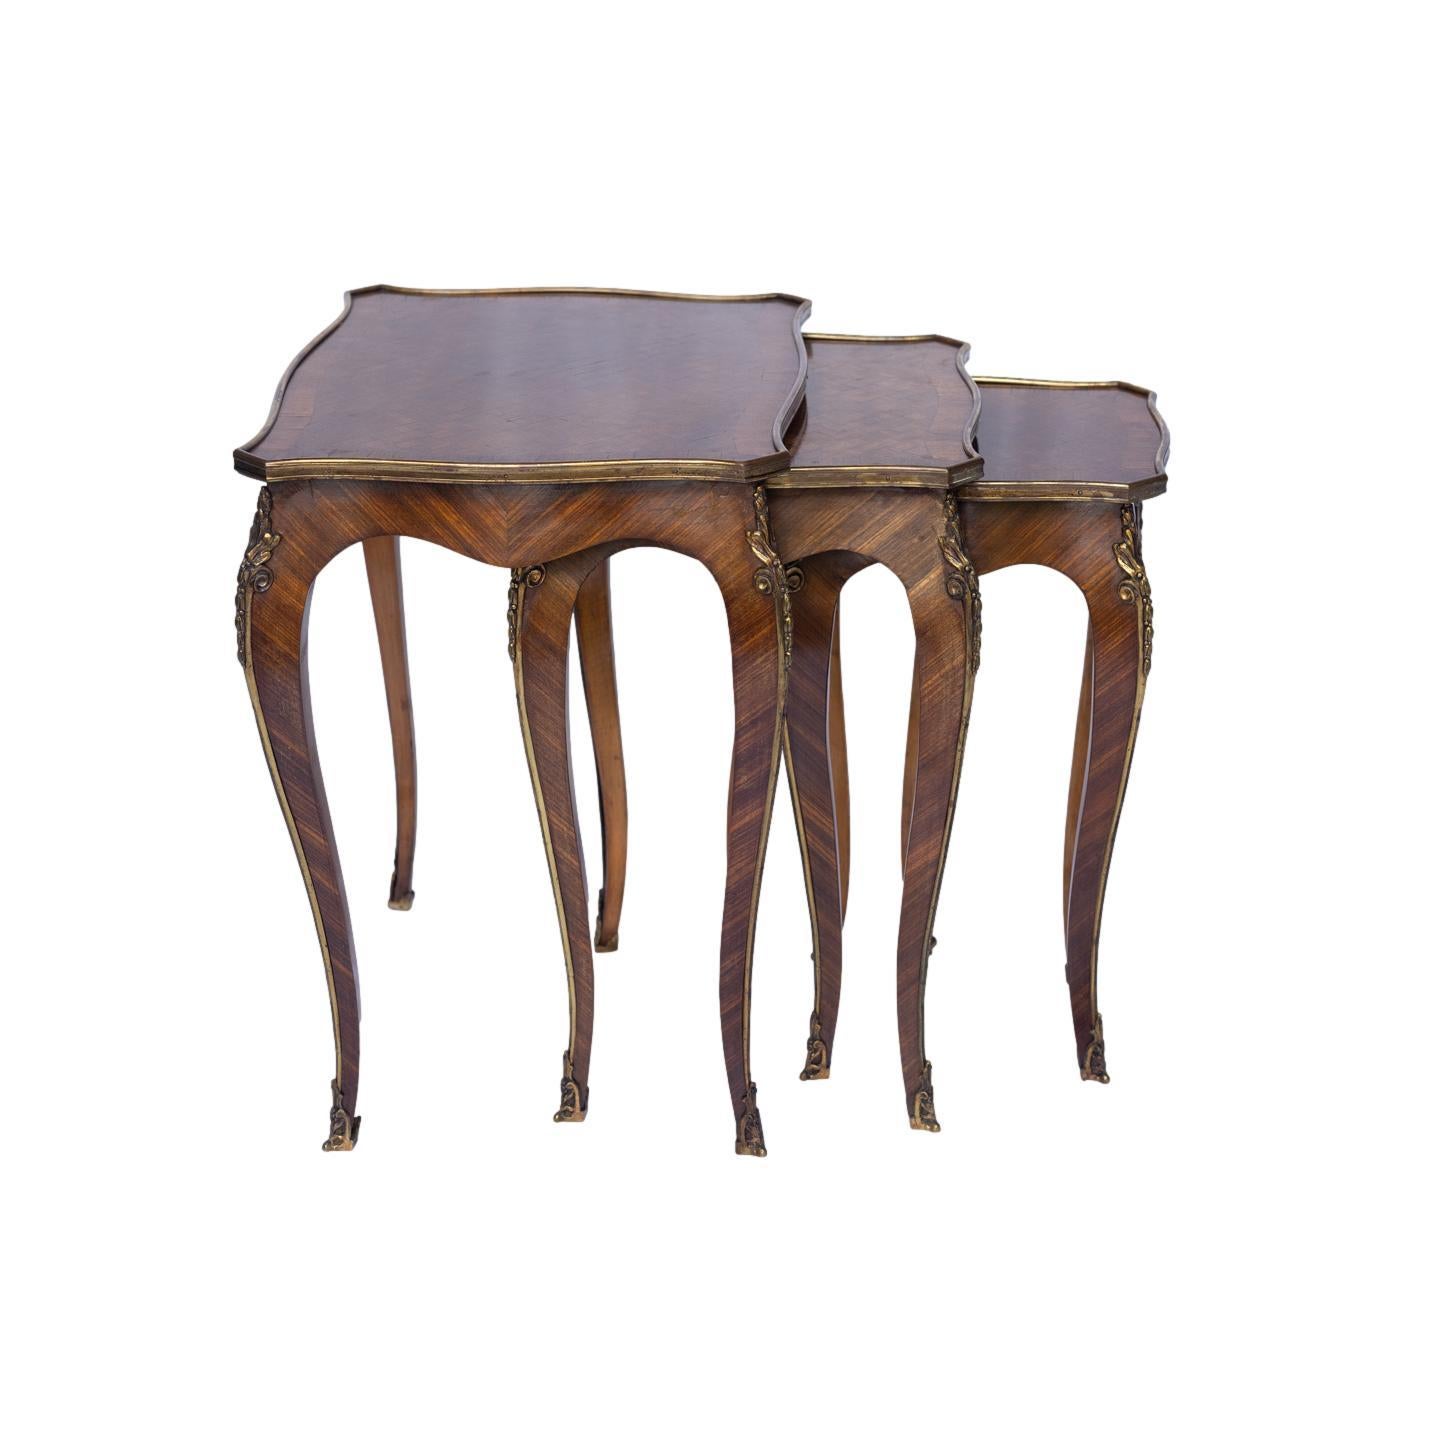 Eine Suite von drei Louis XV-Stil Königsholz und Parkett Nesting Tables, jeweils mit einem geformten und gebändert rechteckige Platte durch eine Parkettplatte zentriert und in einem Ormolu Band, auf Cabriole Beine mit Kopf von foliate Beschläge und